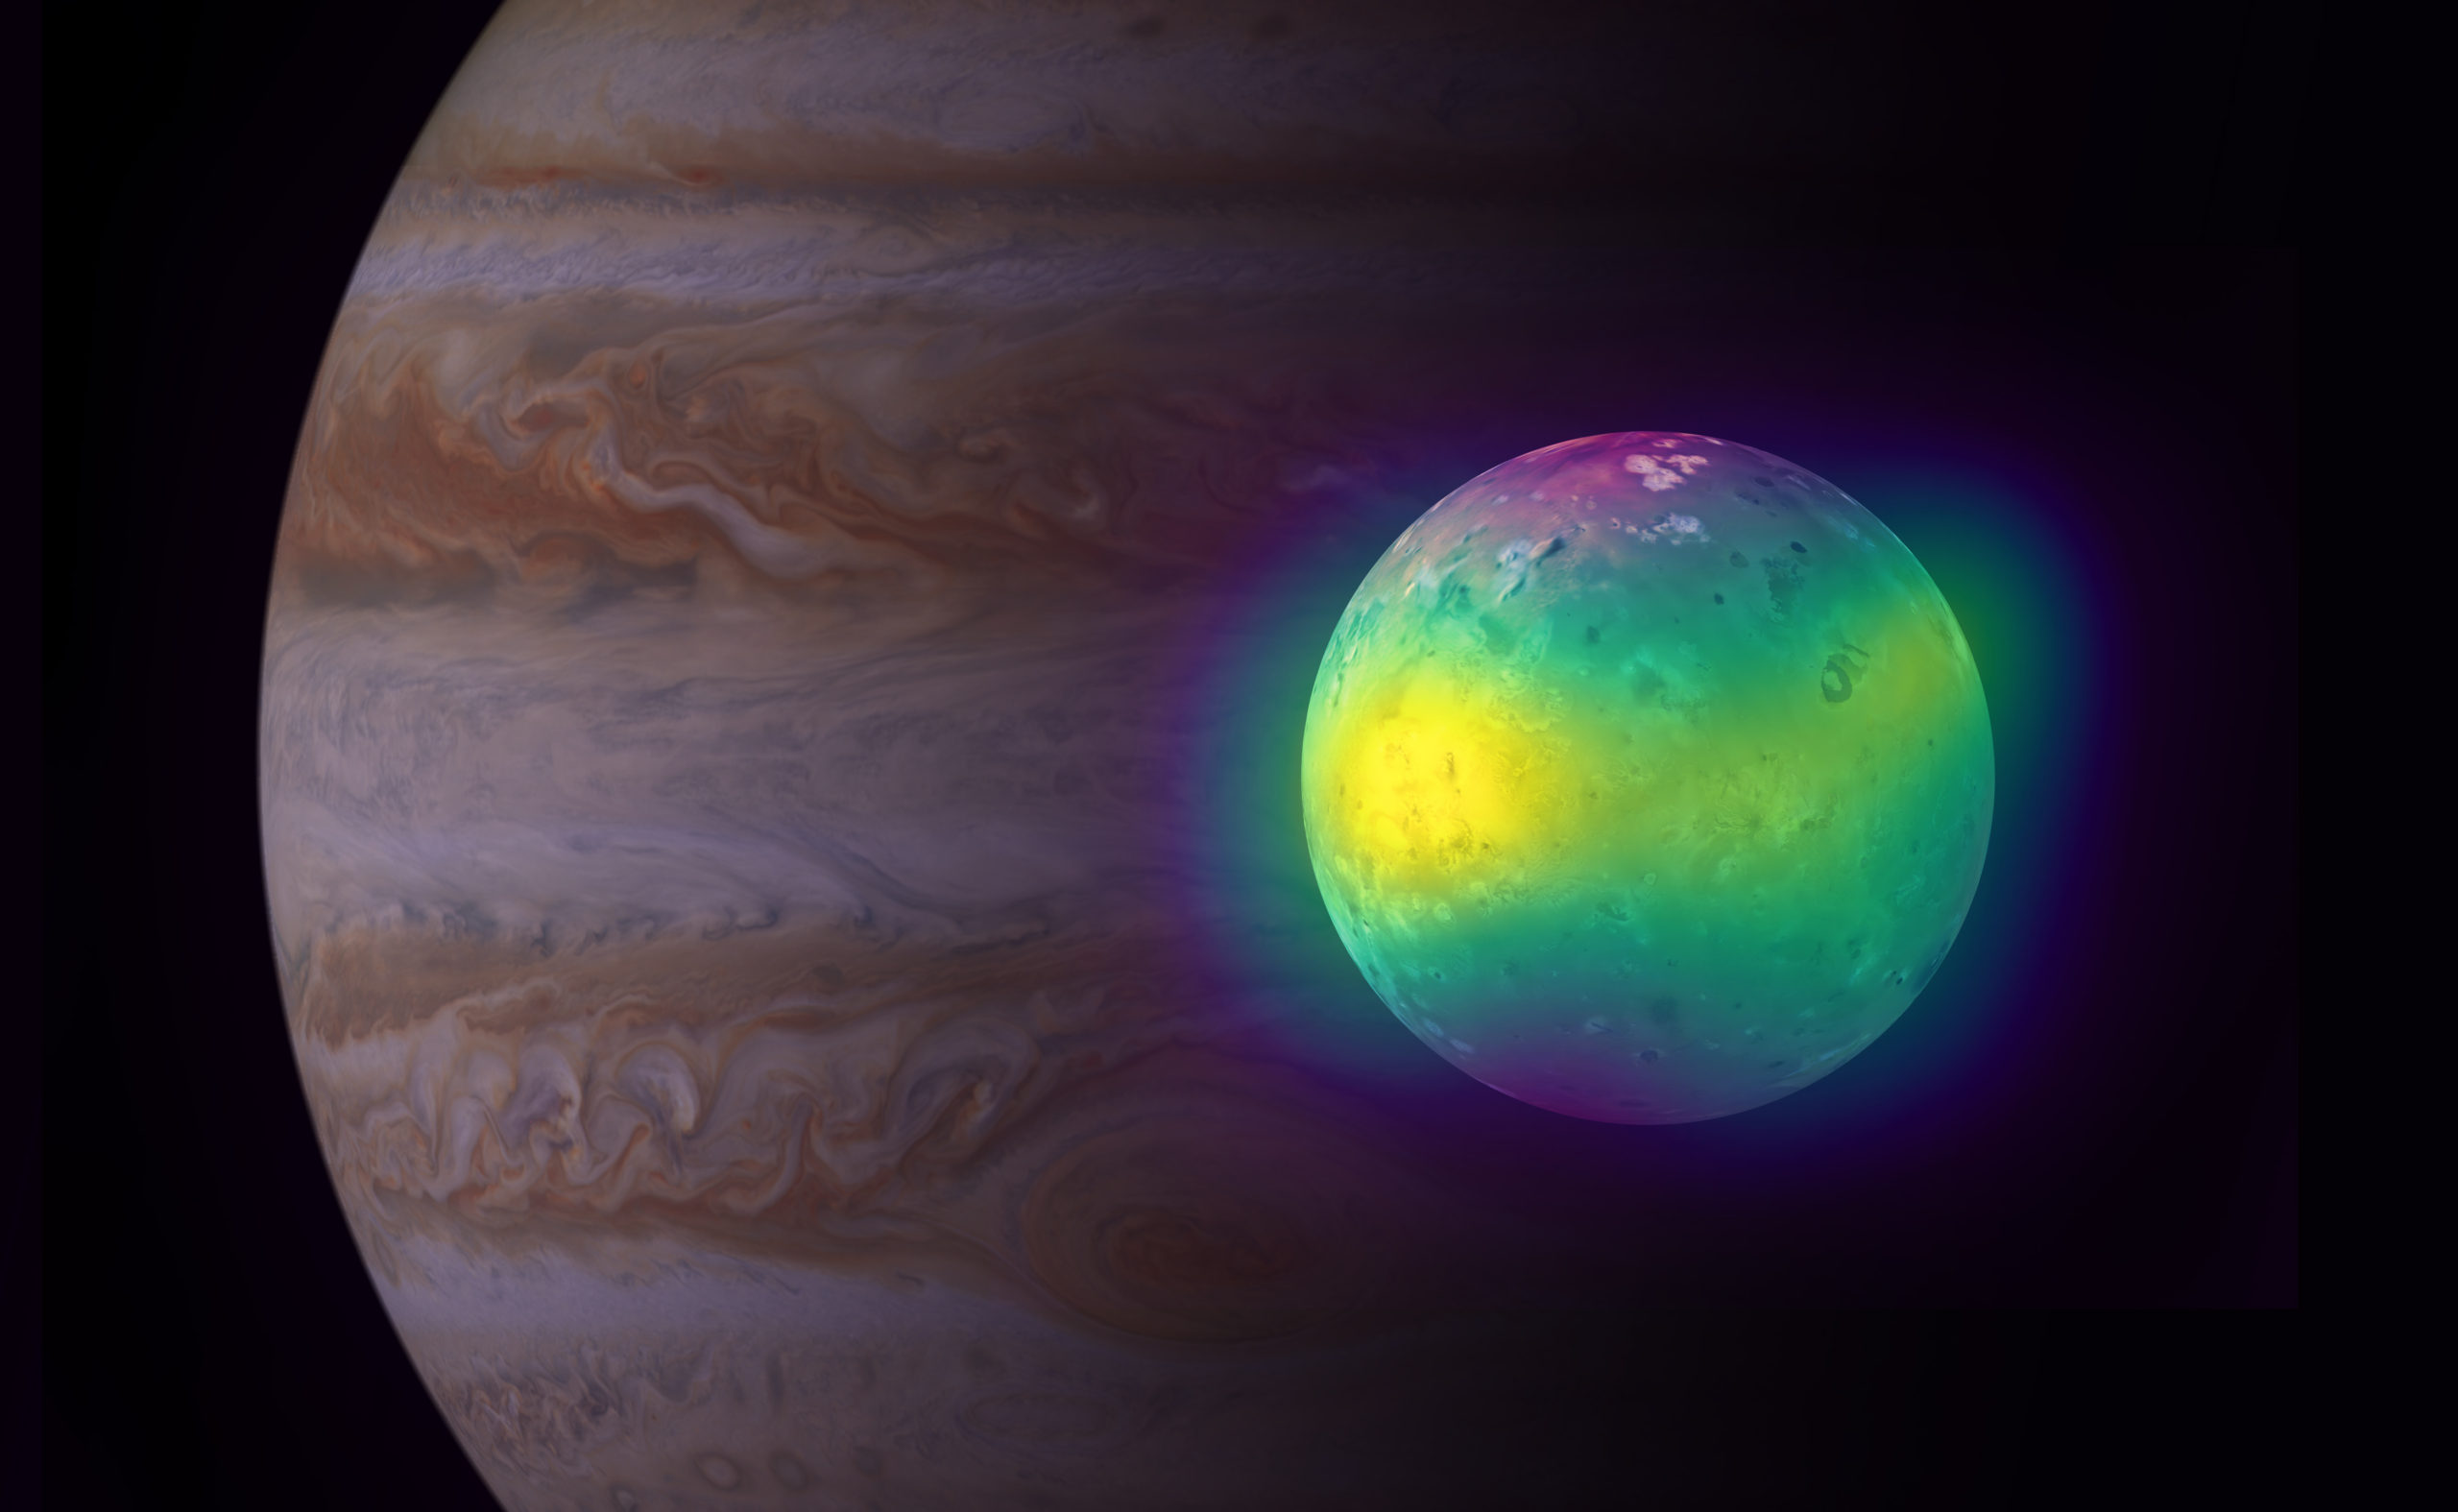 Jupiter's moon Io. Credit: ALMA (ESO/NAOJ/NRAO), I. de Pater et al.; NRAO/AUI NSF, S. Dagnello; NASA/JPL/Space Science Institute